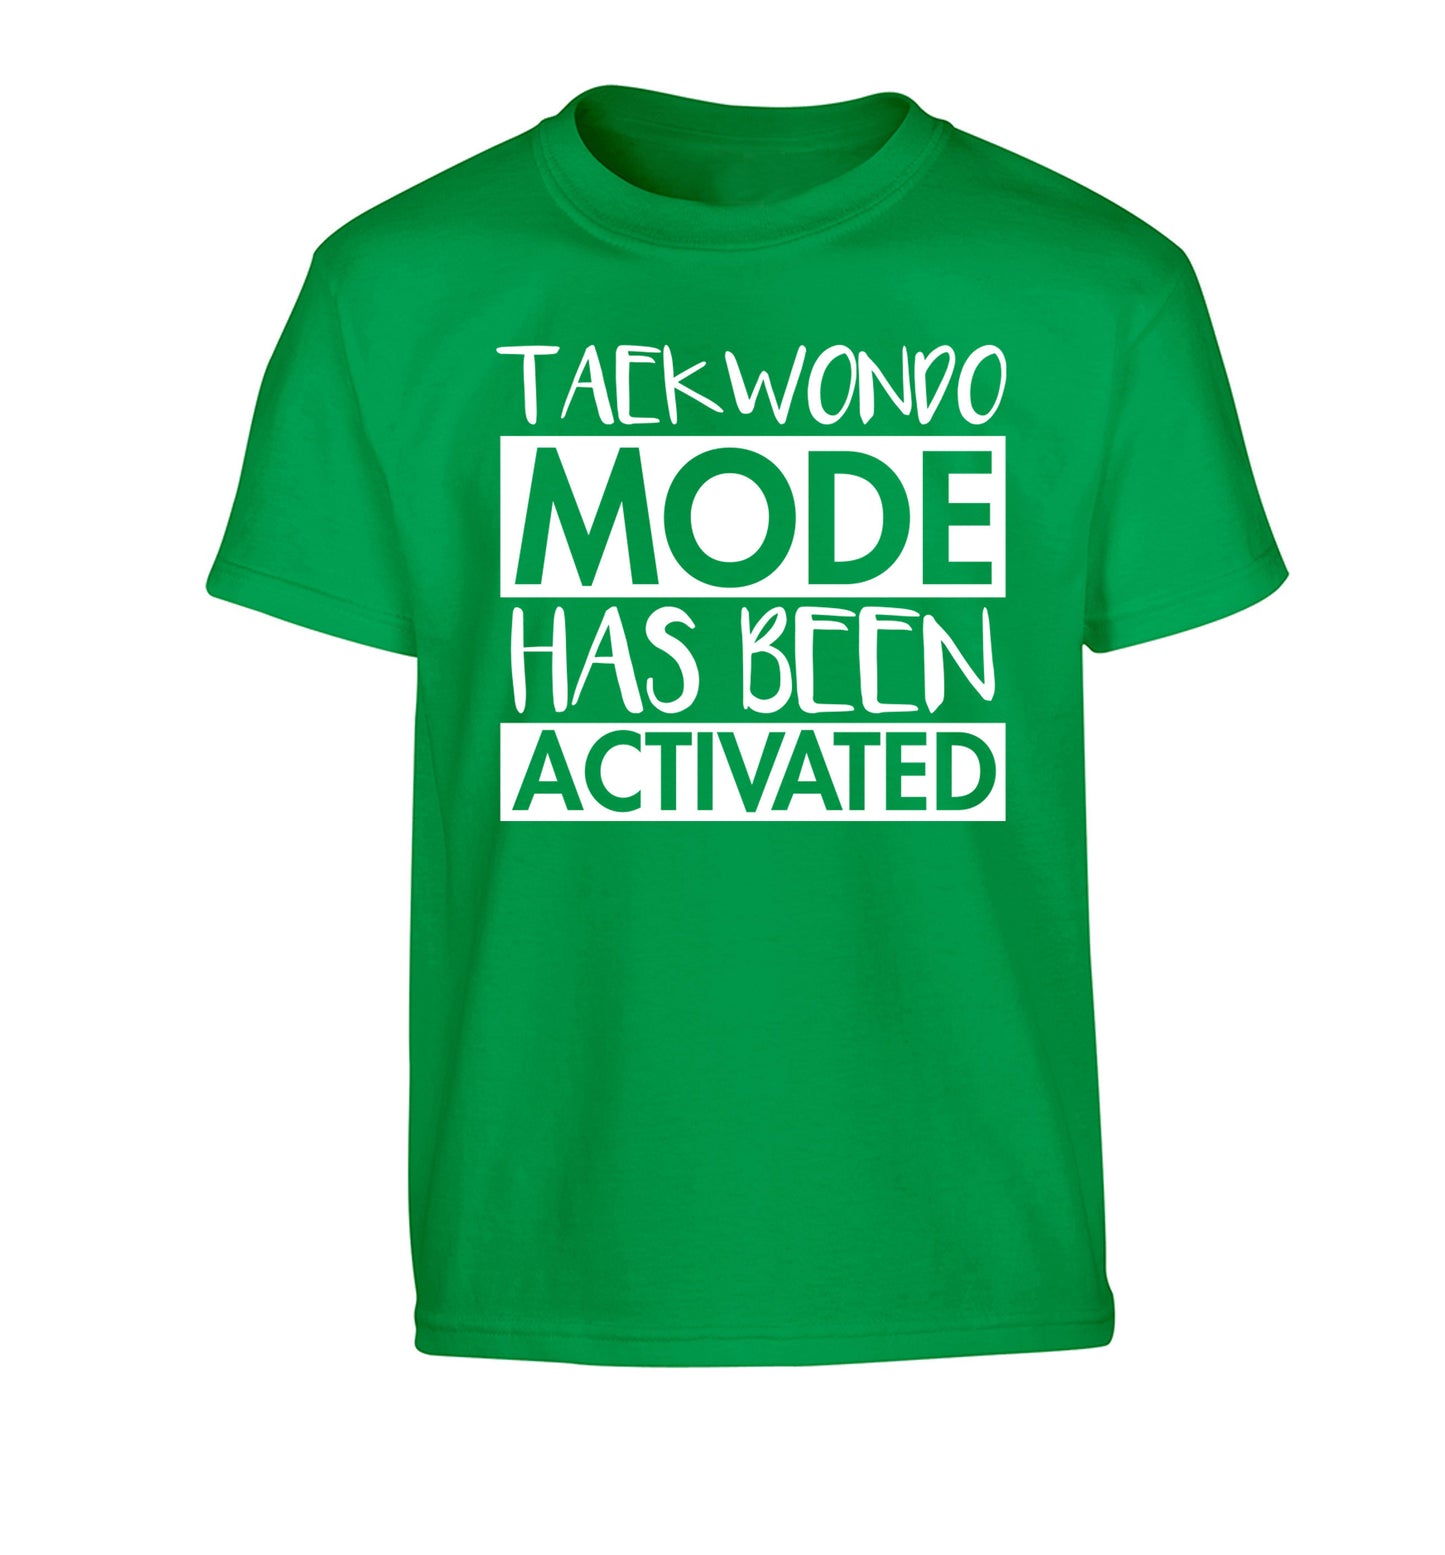 Taekwondo mode activated Children's green Tshirt 12-14 Years